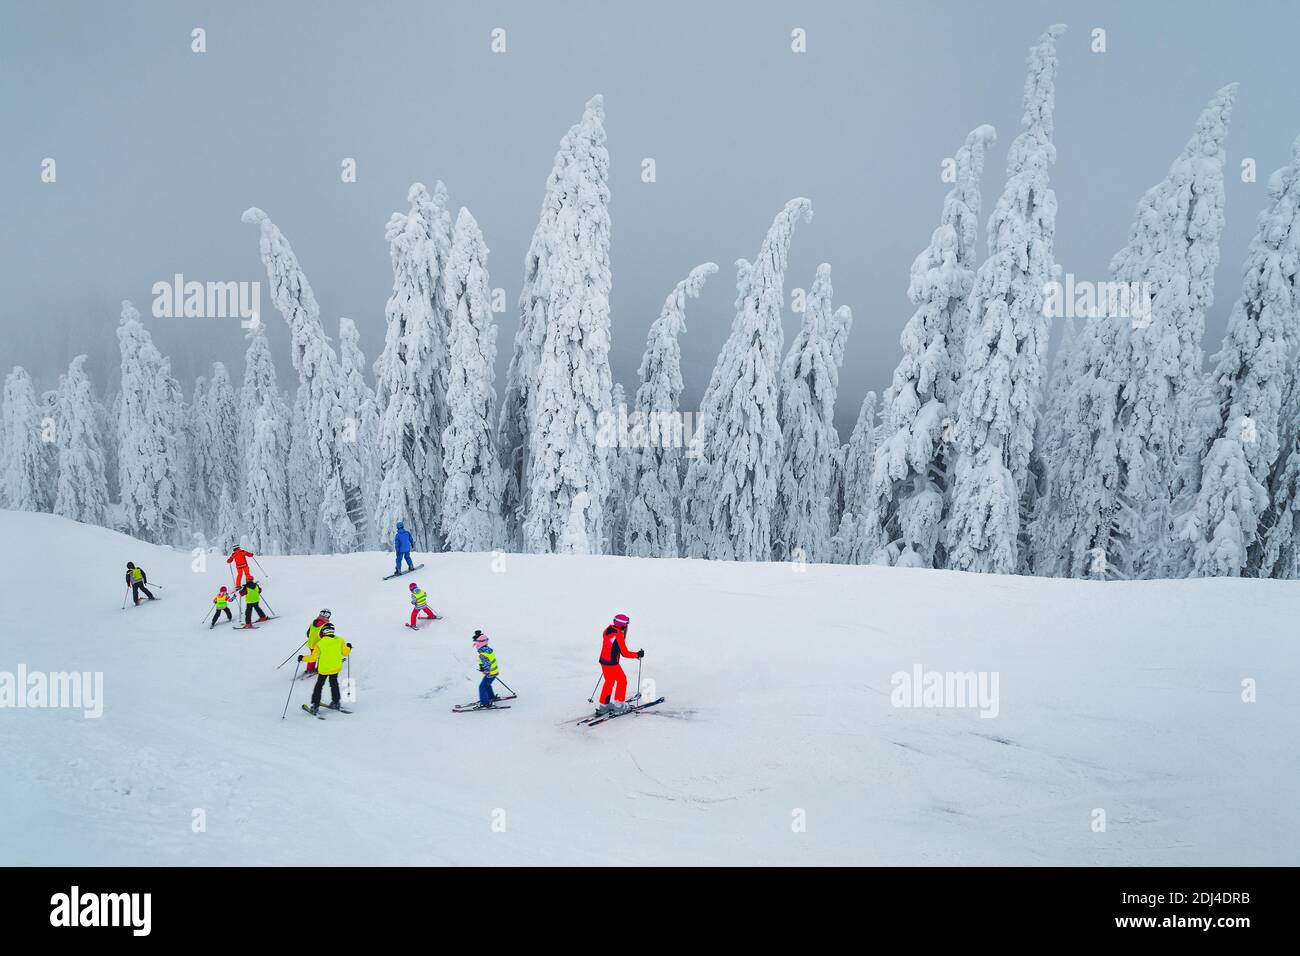 Fabuleux arbres enneigés et station de ski d'hiver brumeuse. Enfants actifs ski alpin dans la célèbre station de ski de Poiana Brasov, Transylvanie, Roumanie, Banque D'Images